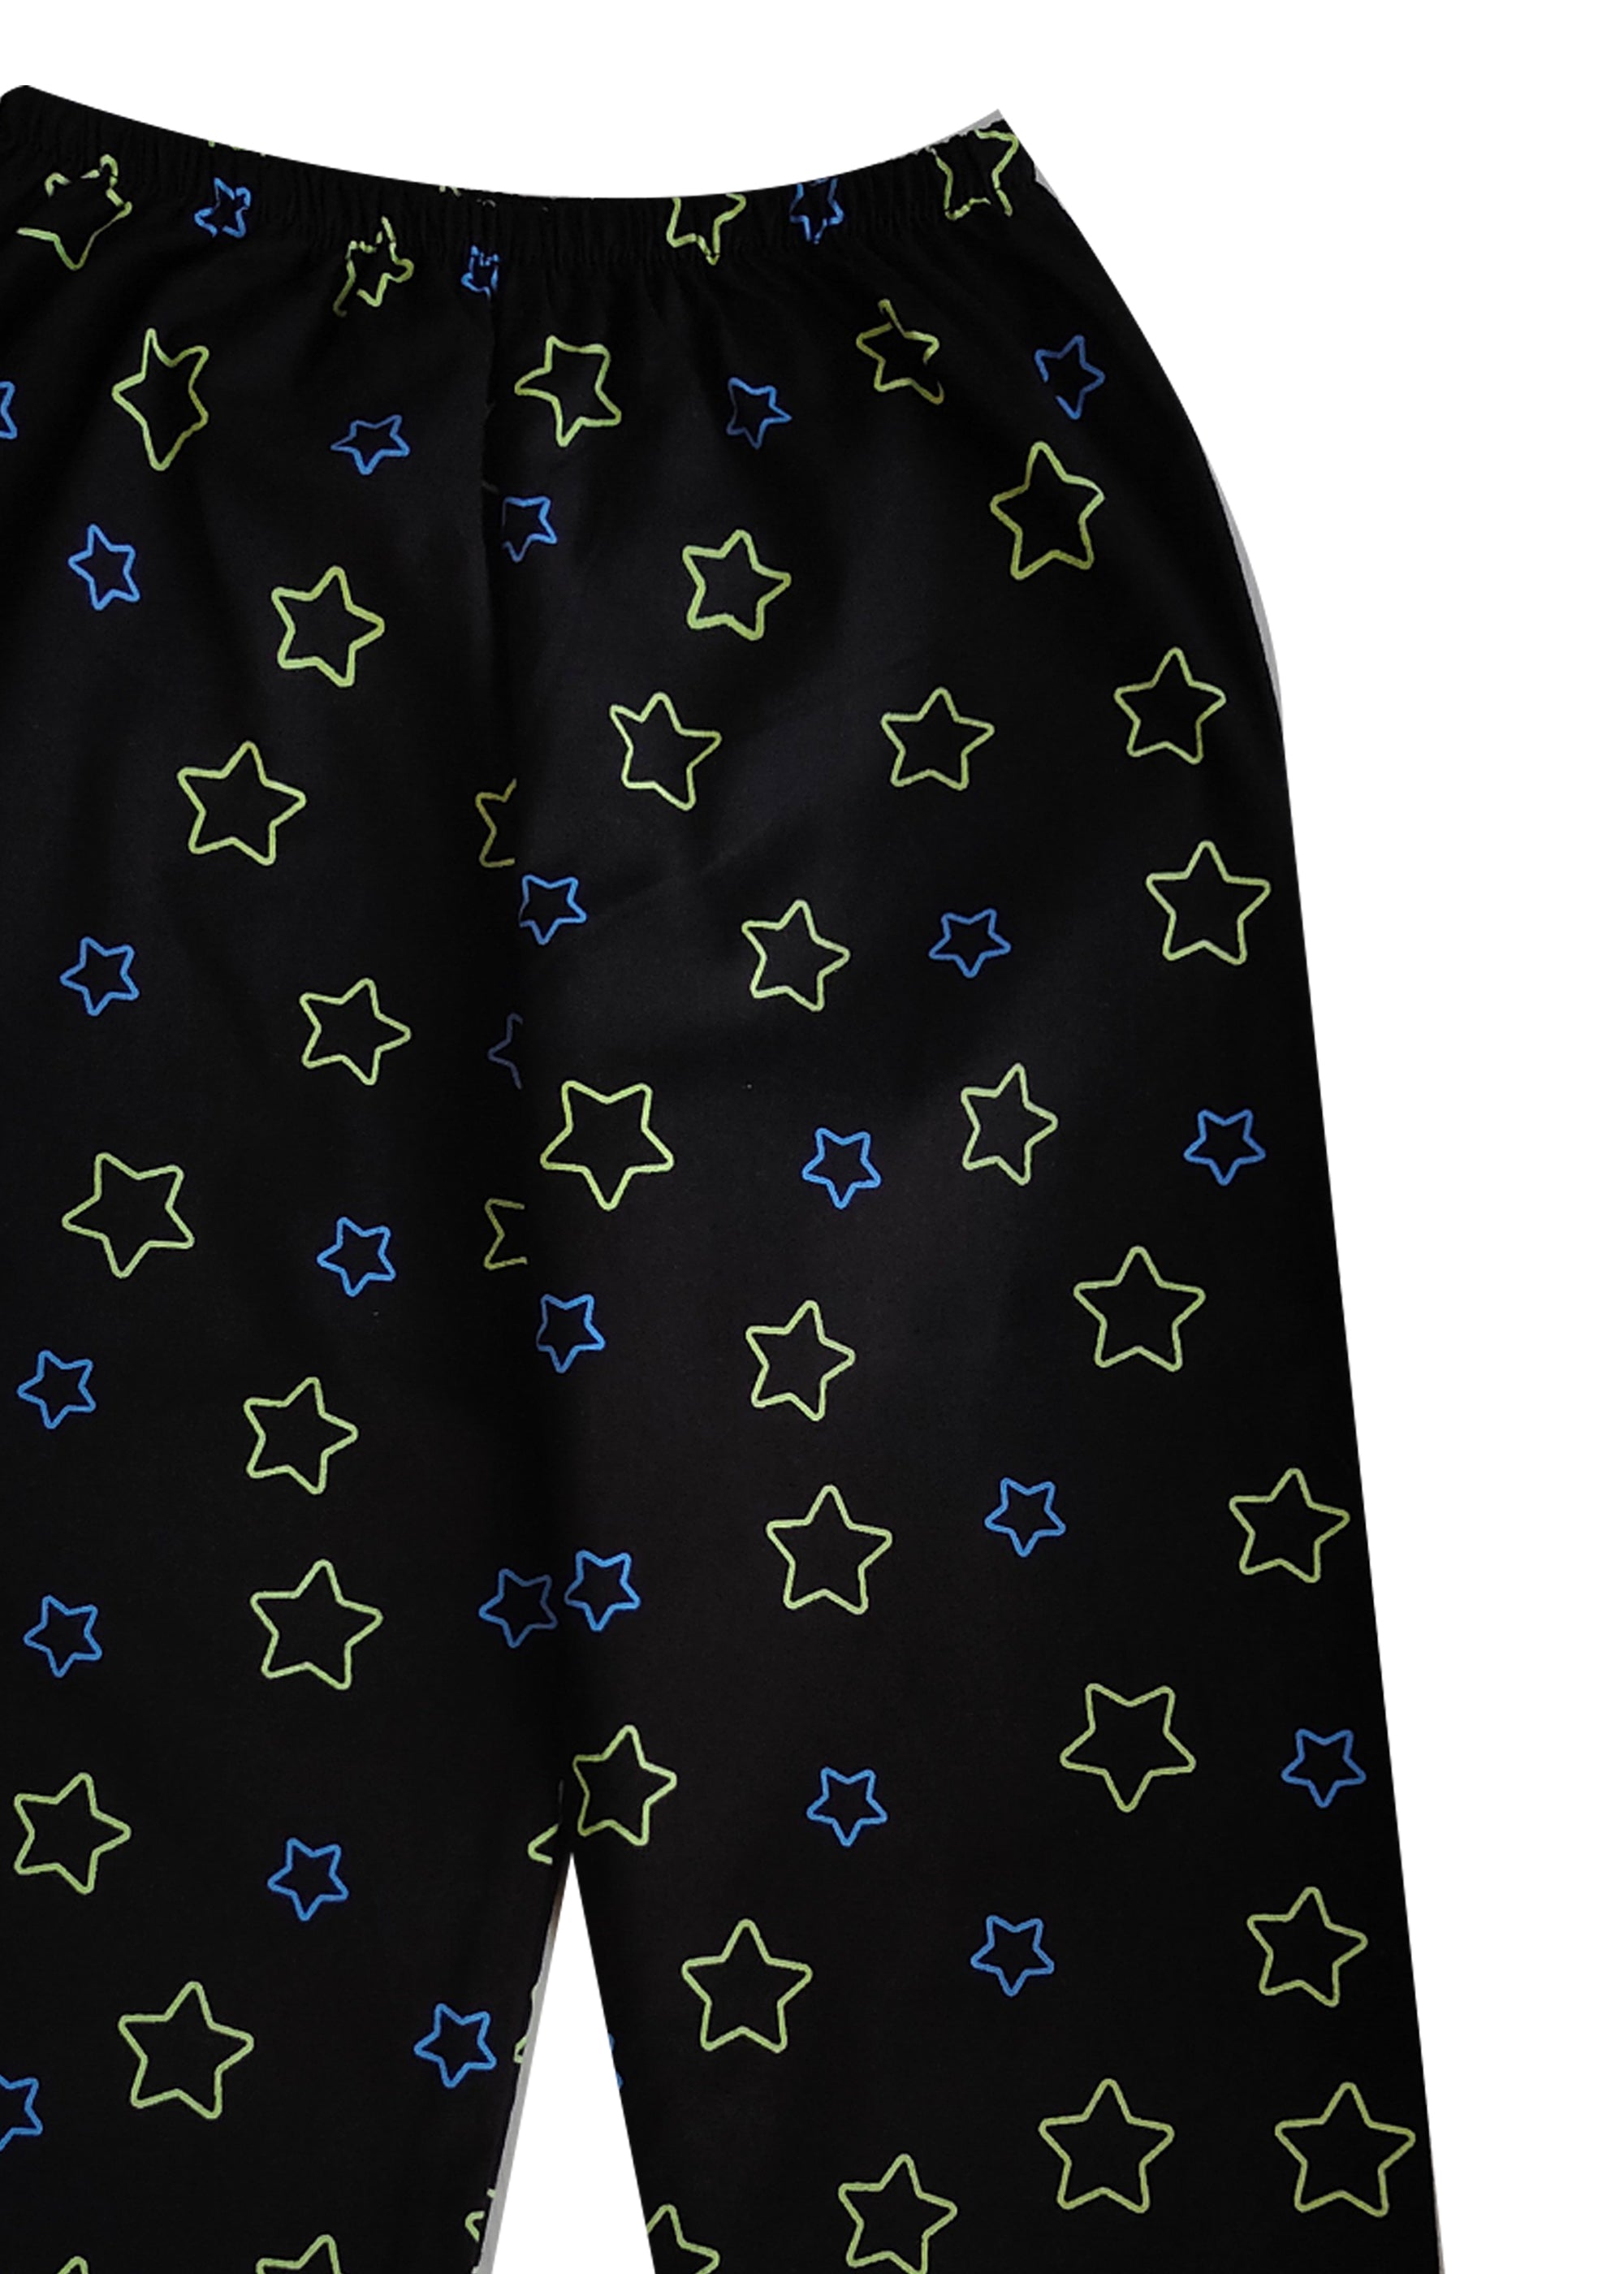 Glow in the Dark Blue Star Print Long Sleeve Kids Night Suit - Shopbloom